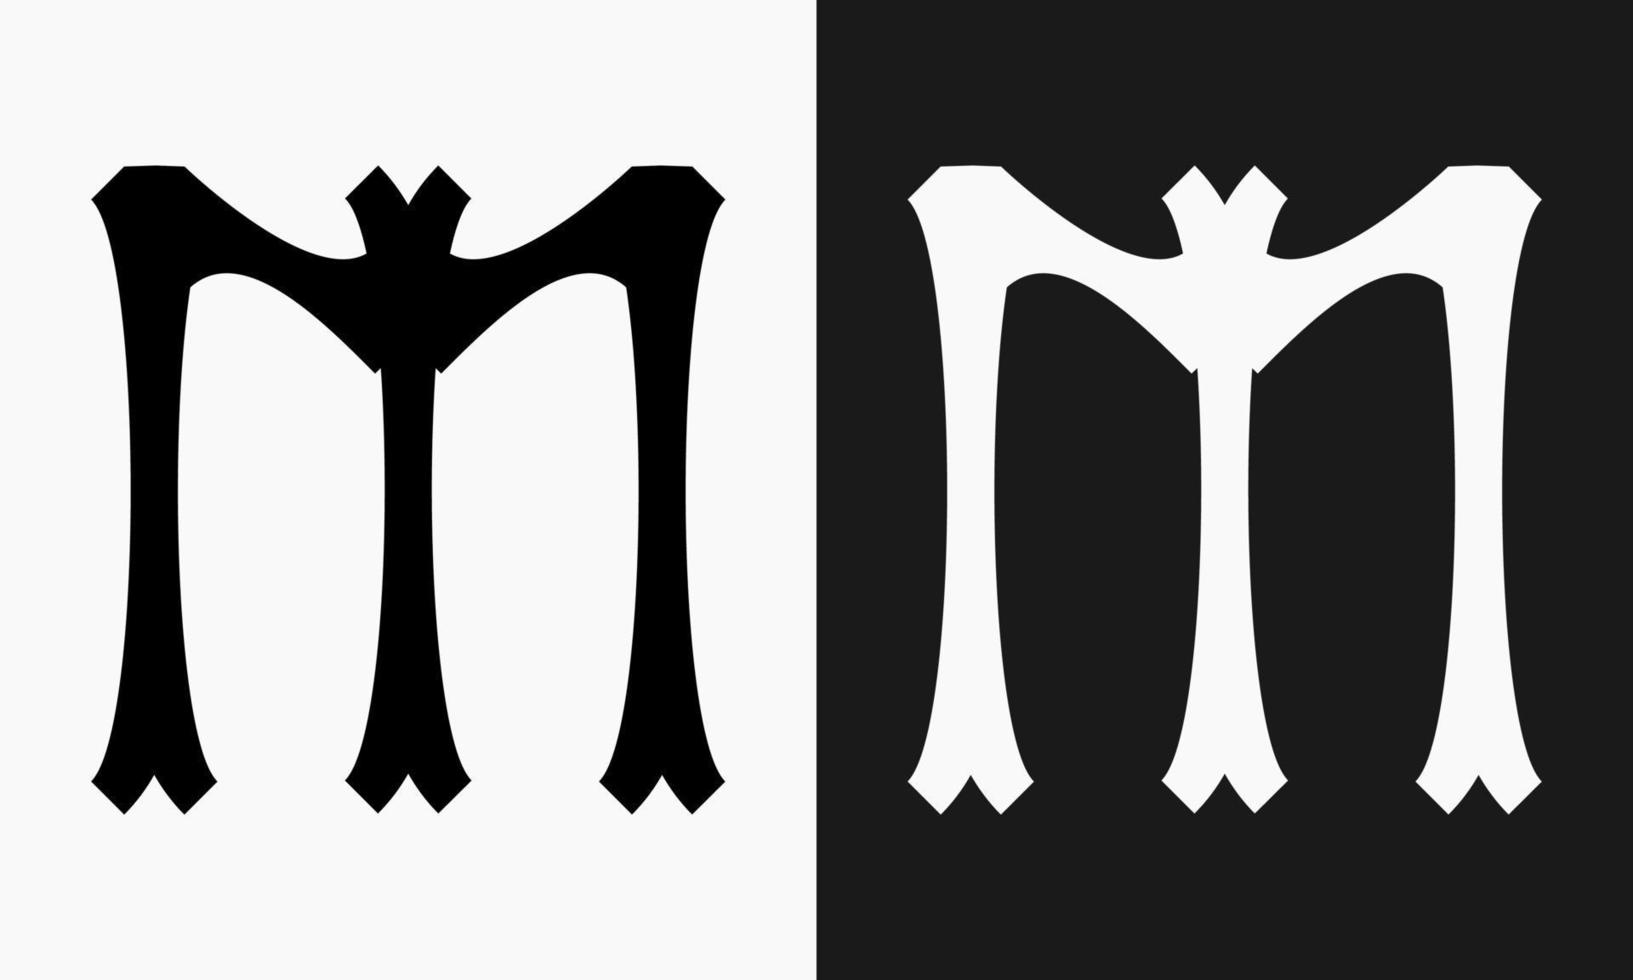 en bokstavsformad design den där har en klassisk effekt och en gotik känna. lämplig för använda sig av som en logotyp eller markör vektor